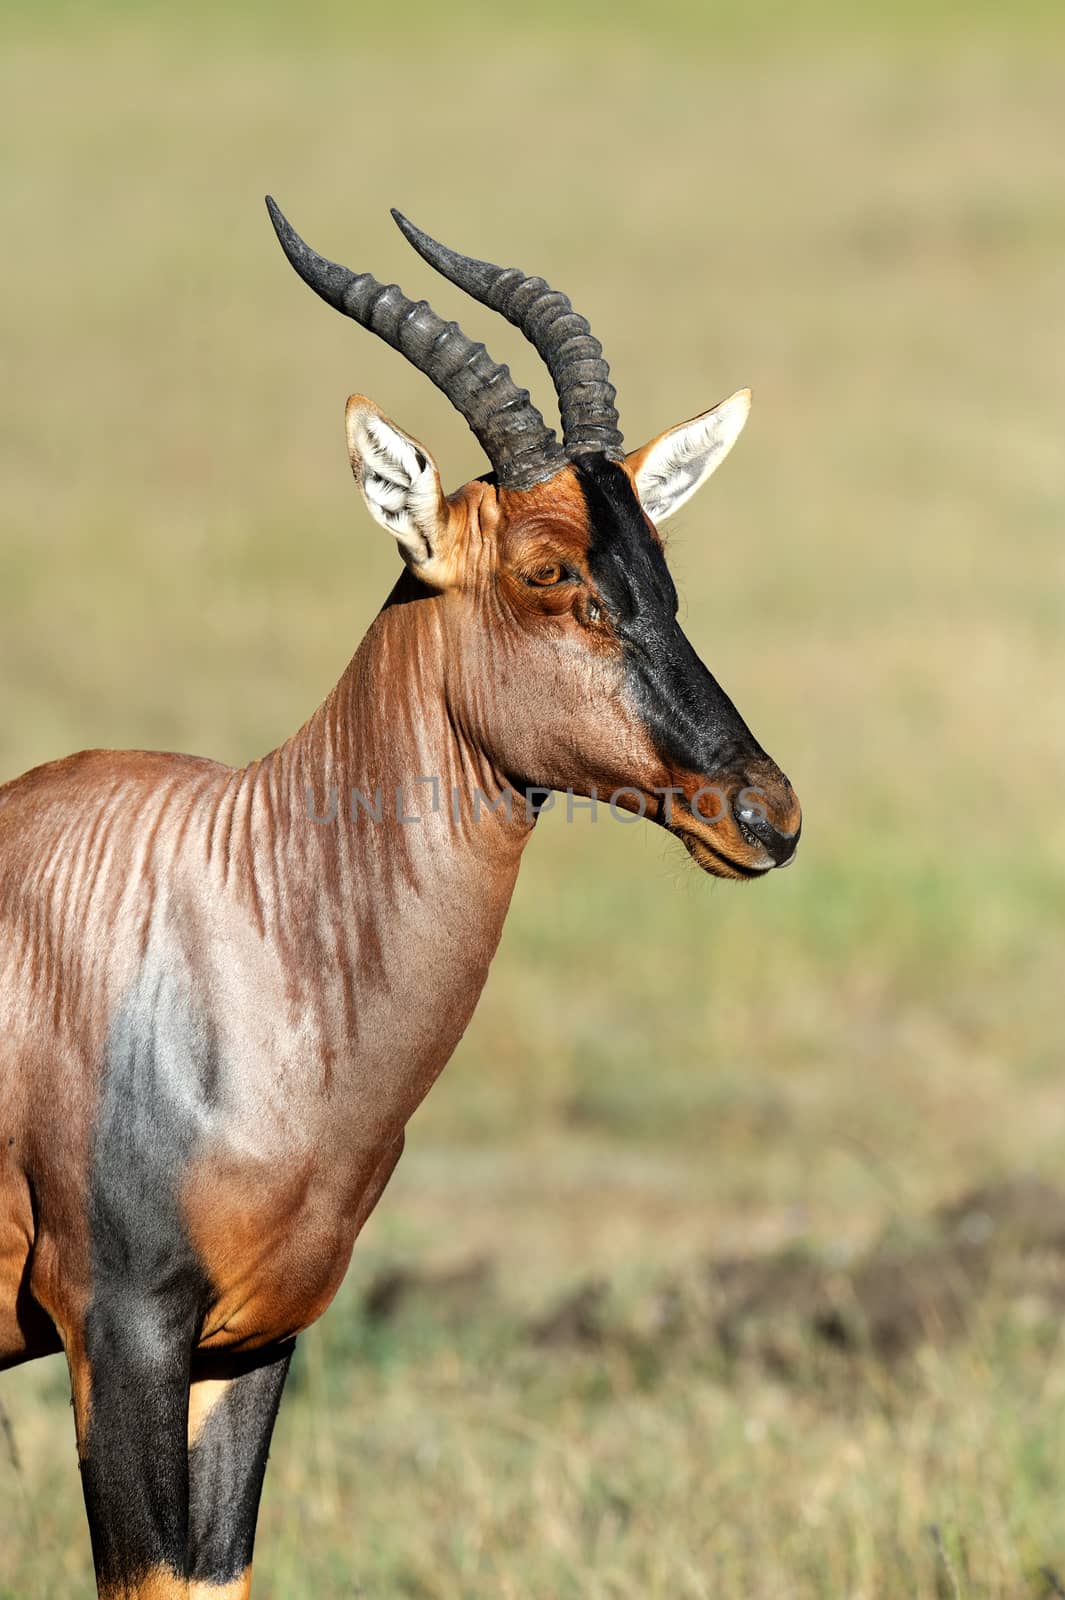 Topi Antelope (Damaliscus lunatus) in Kenya's Masai Mara Reserve